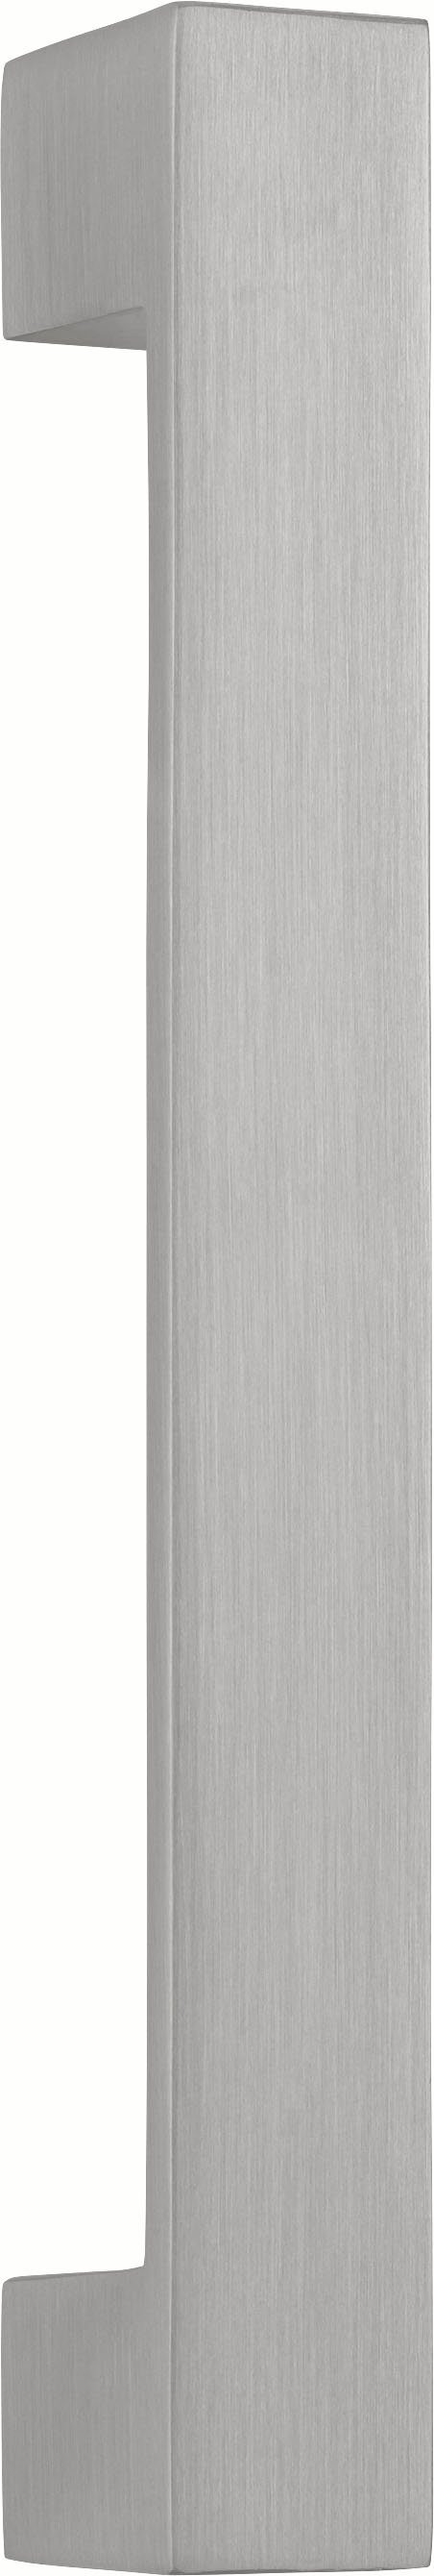 HELD MÖBEL Unterschrank Tinnum 3 breit, weiß weiß cm 180 6 Schubkästen, mit Auszüge Fronten, MDF | Metallgriffe